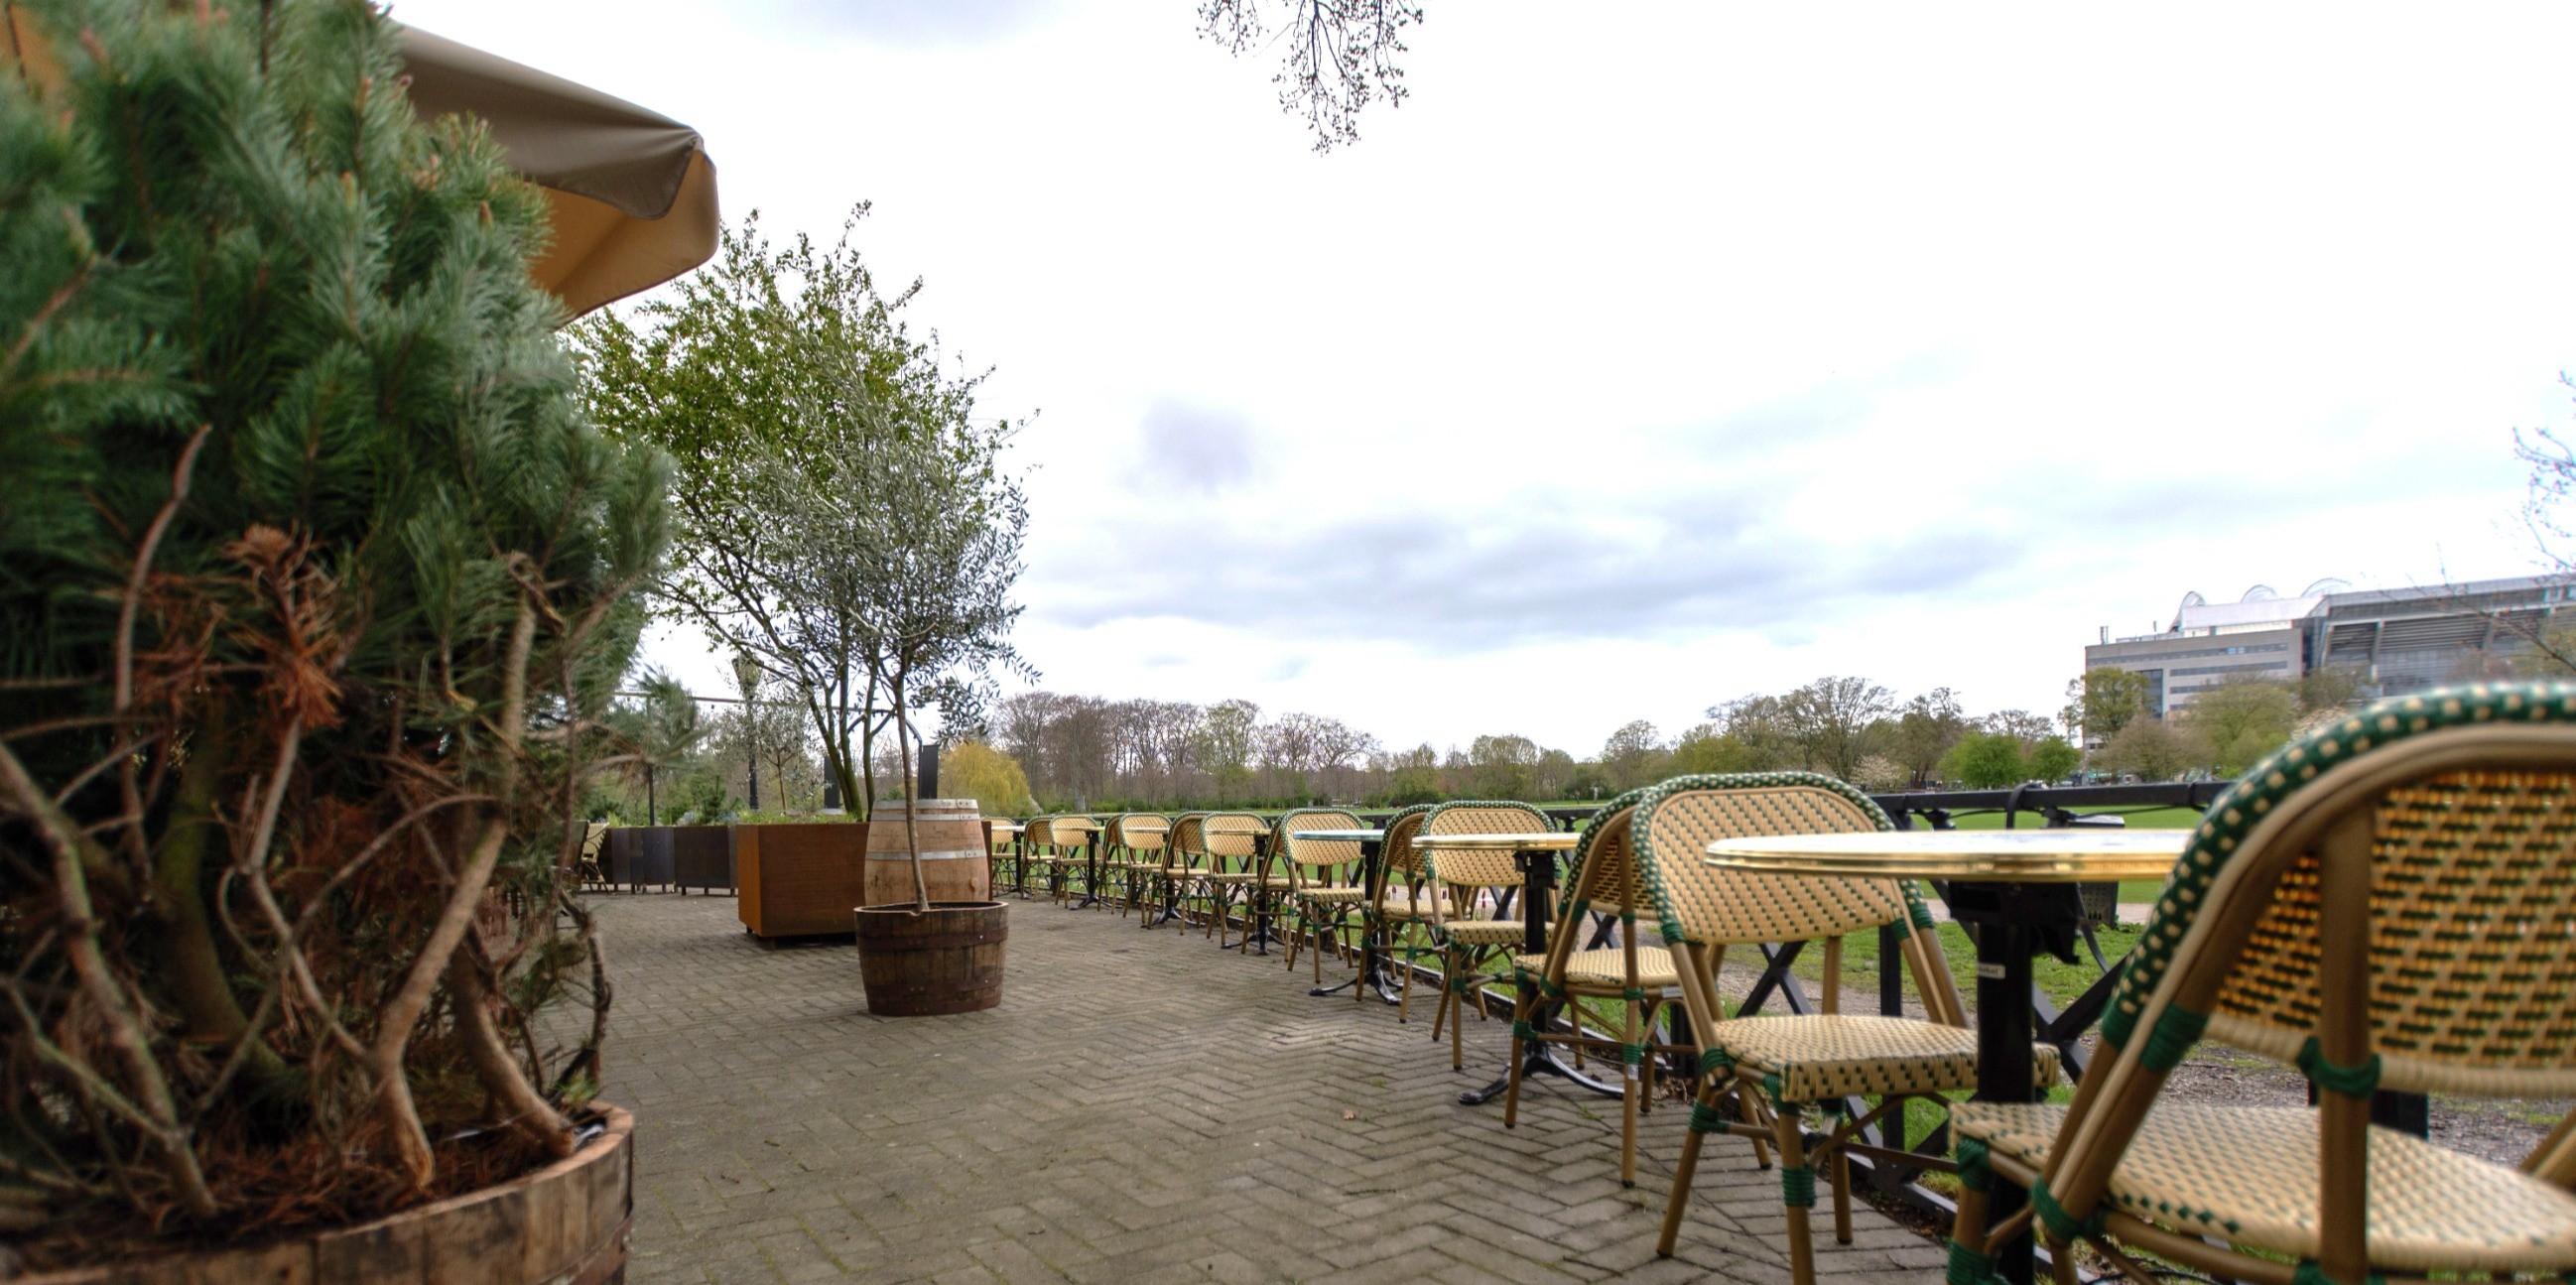 Fælledparkens historiske pavillon genopstår  som moderne beer garden_2